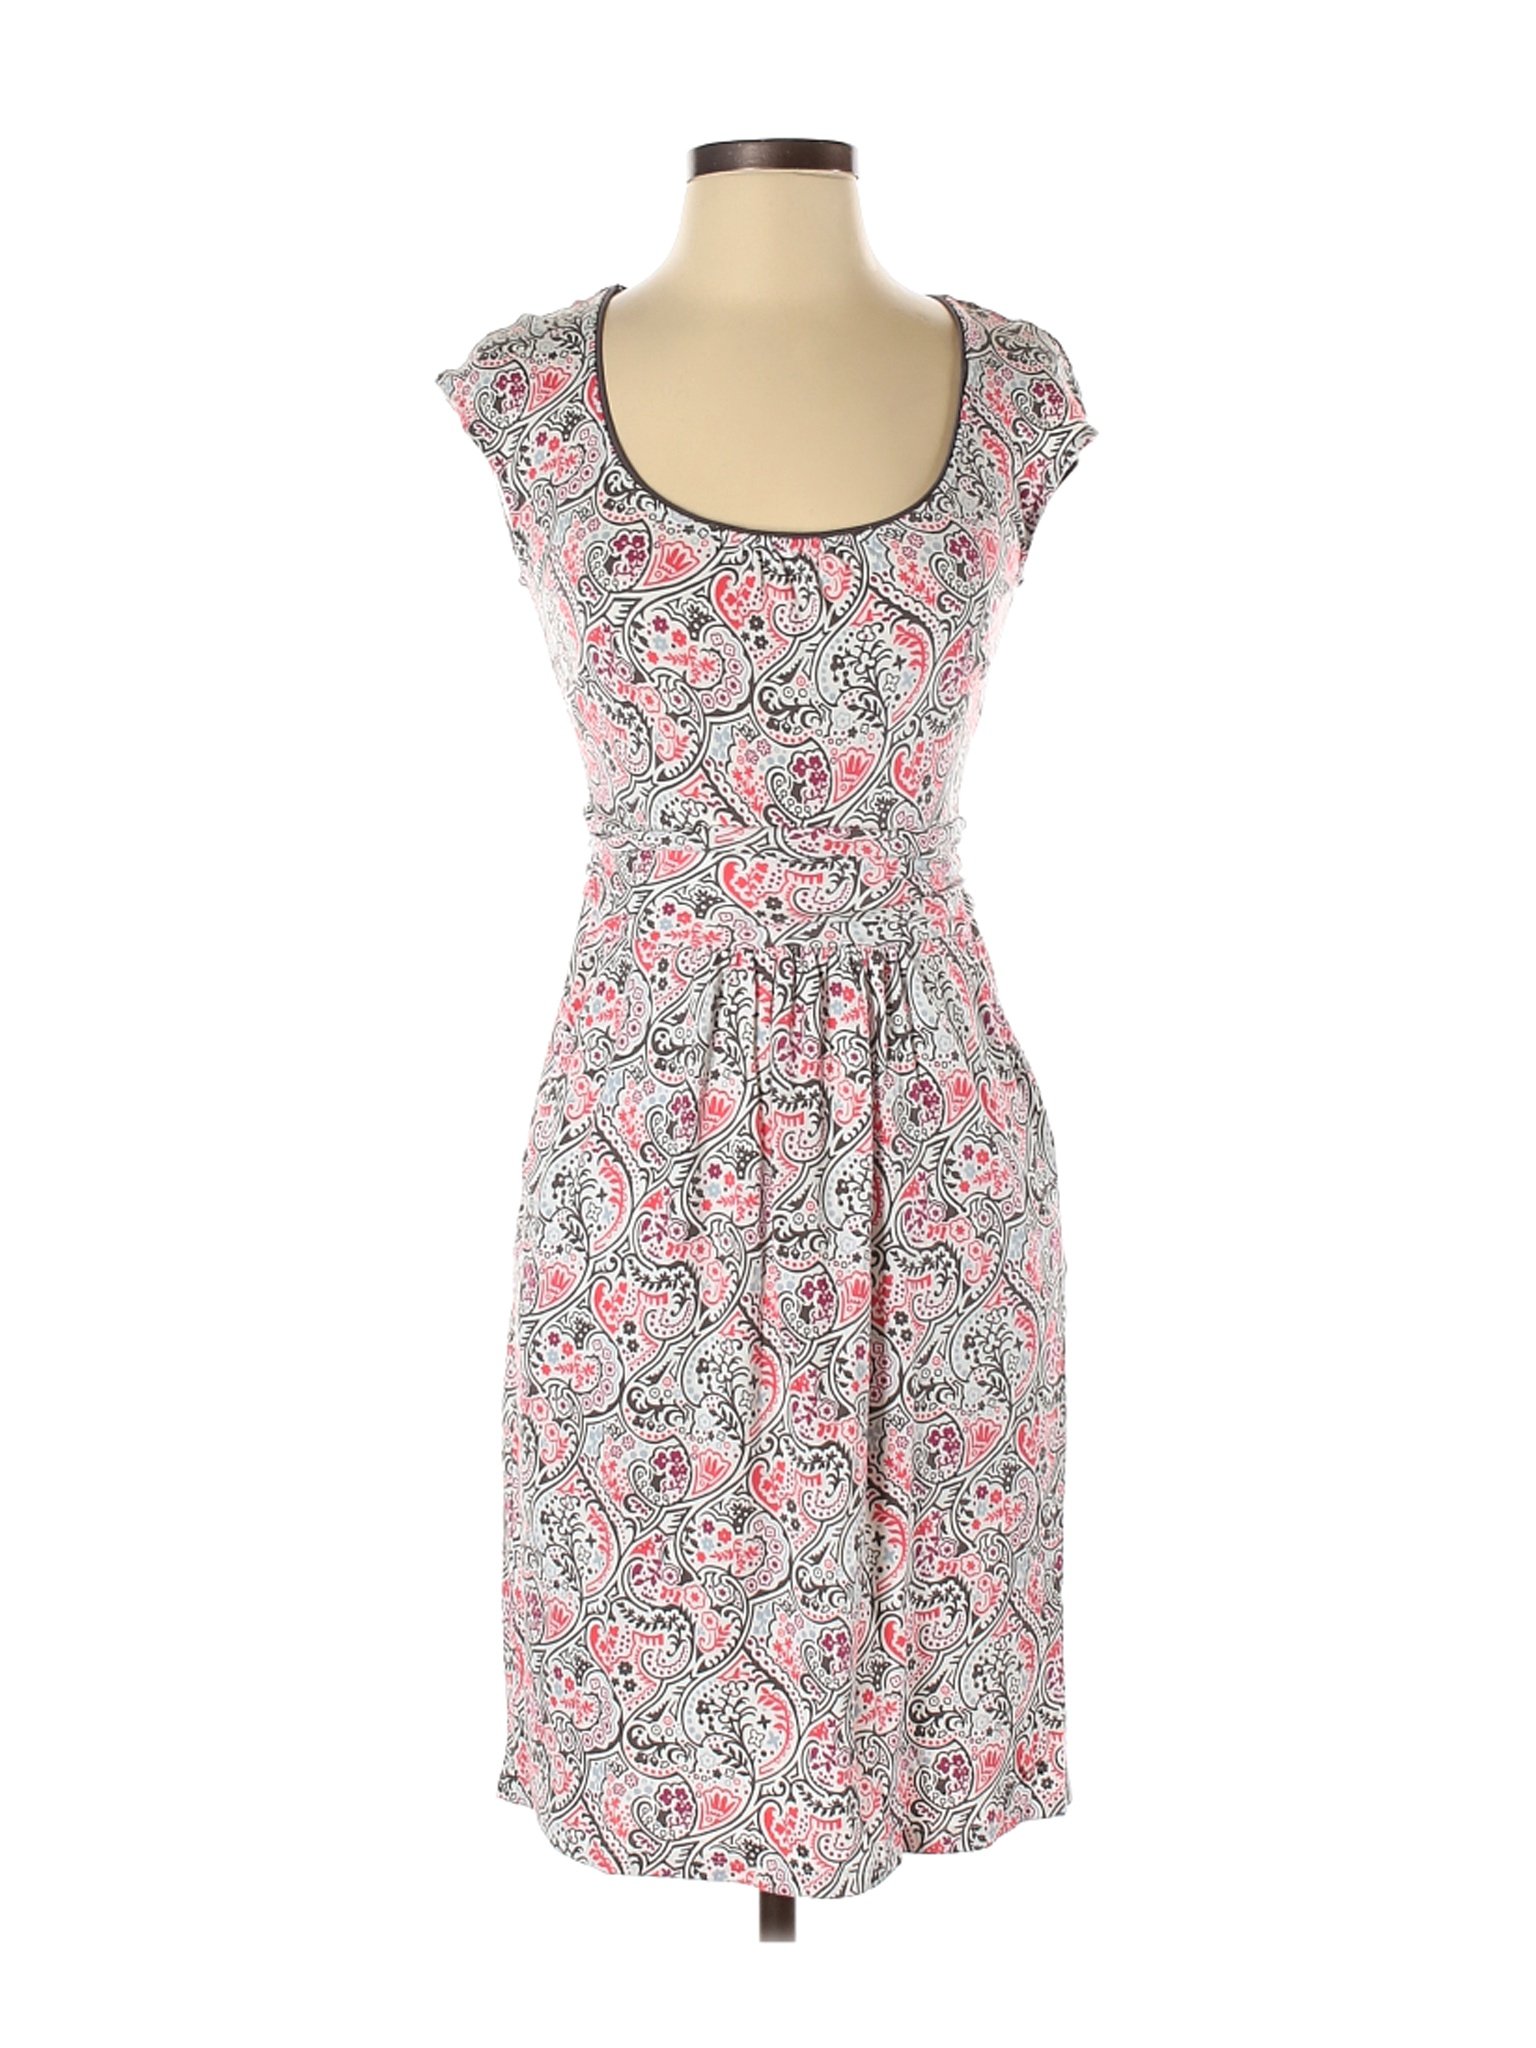 Boden Women Pink Casual Dress 4 | eBay